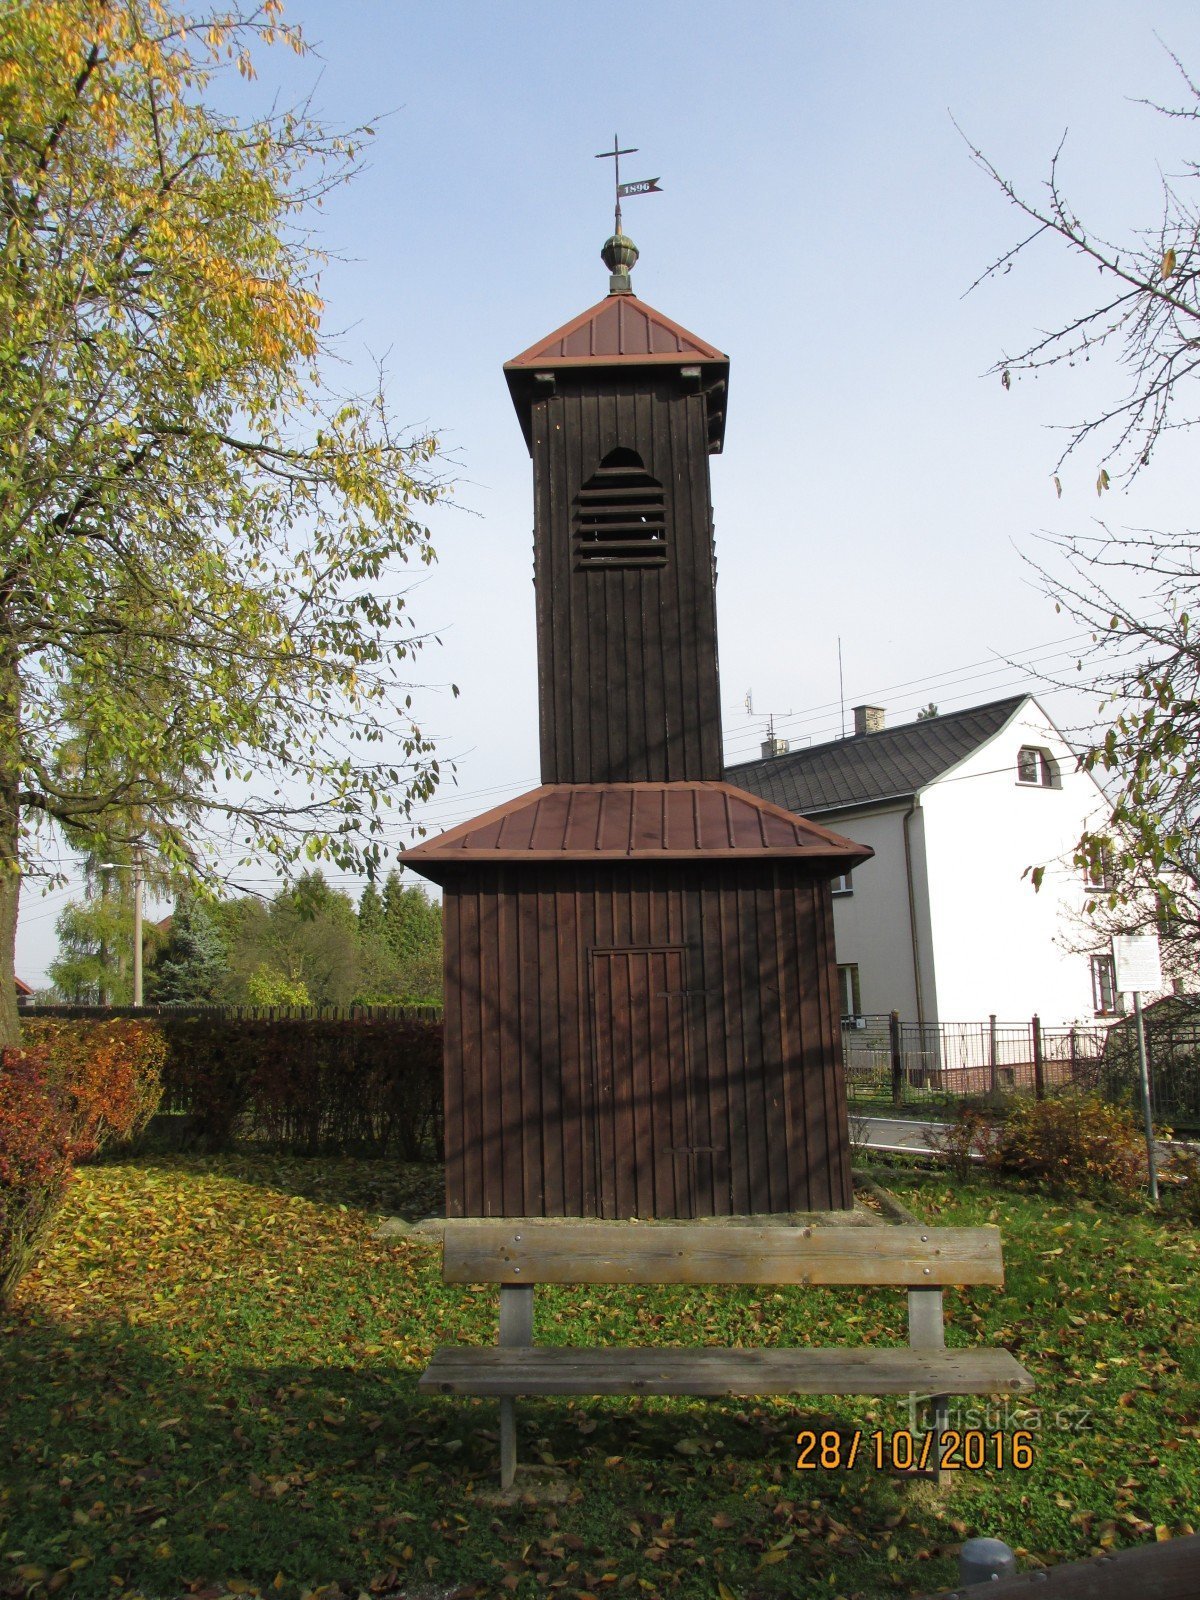 Tháp chuông ở Dolní Datyny